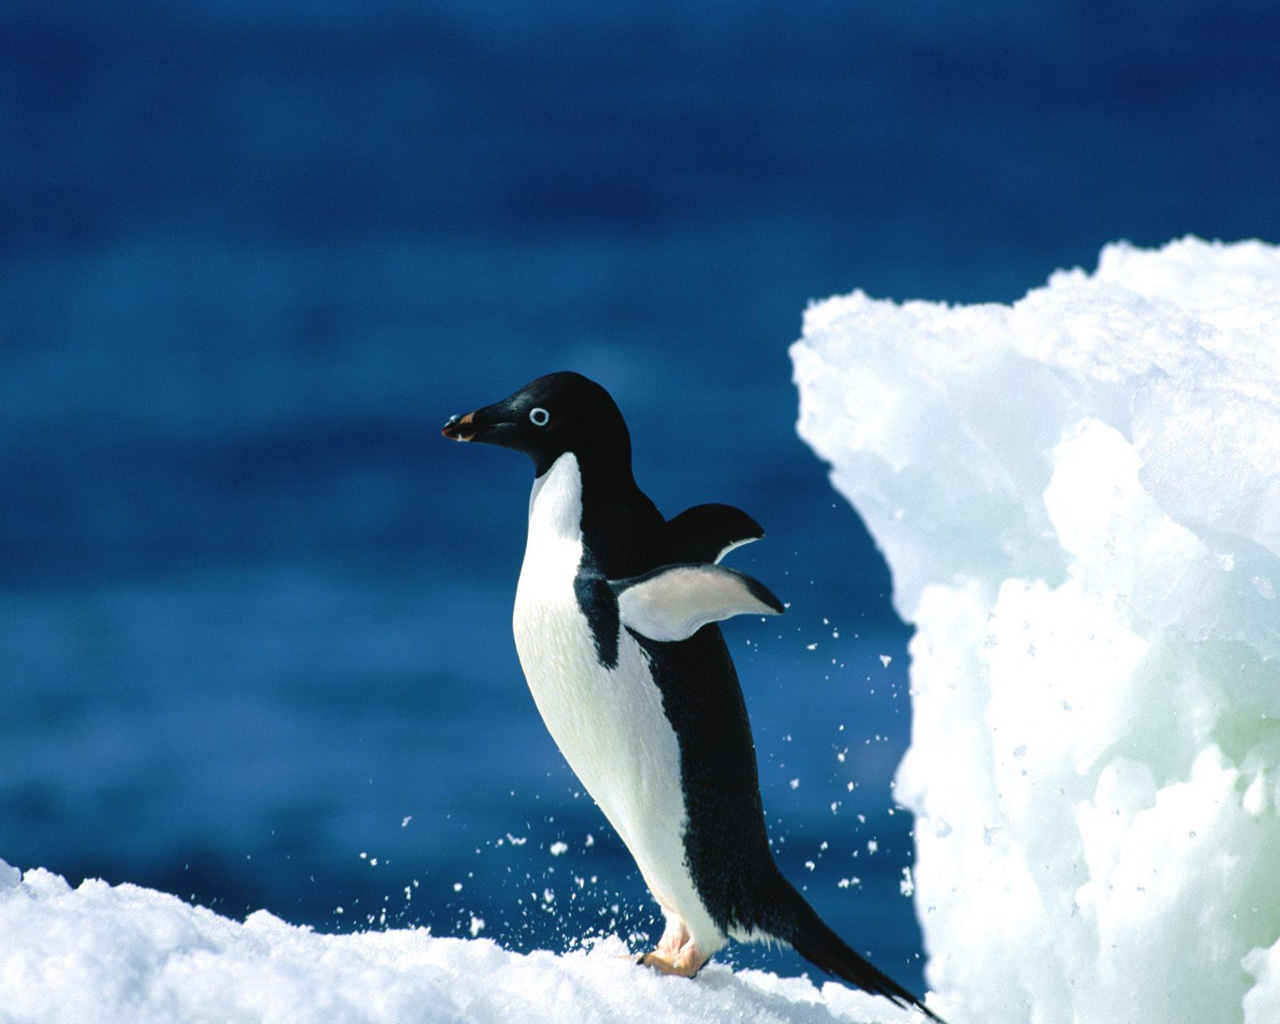 Chú chim cánh cụt vươn cánh ra phía sau thật đẹp